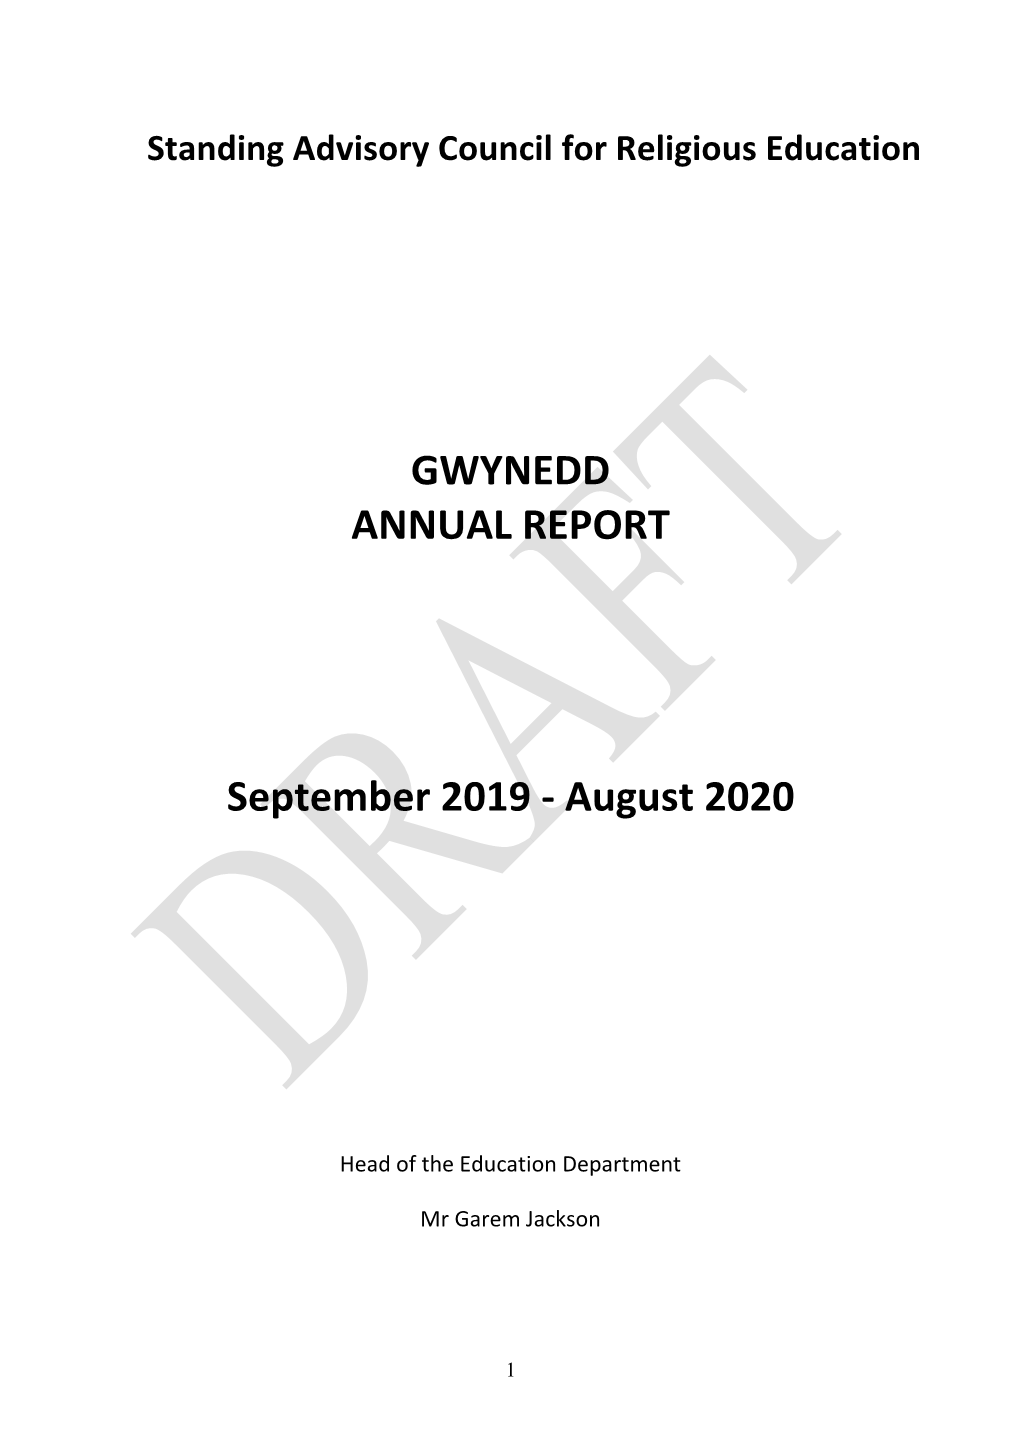 GWYNEDD ANNUAL REPORT September 2019